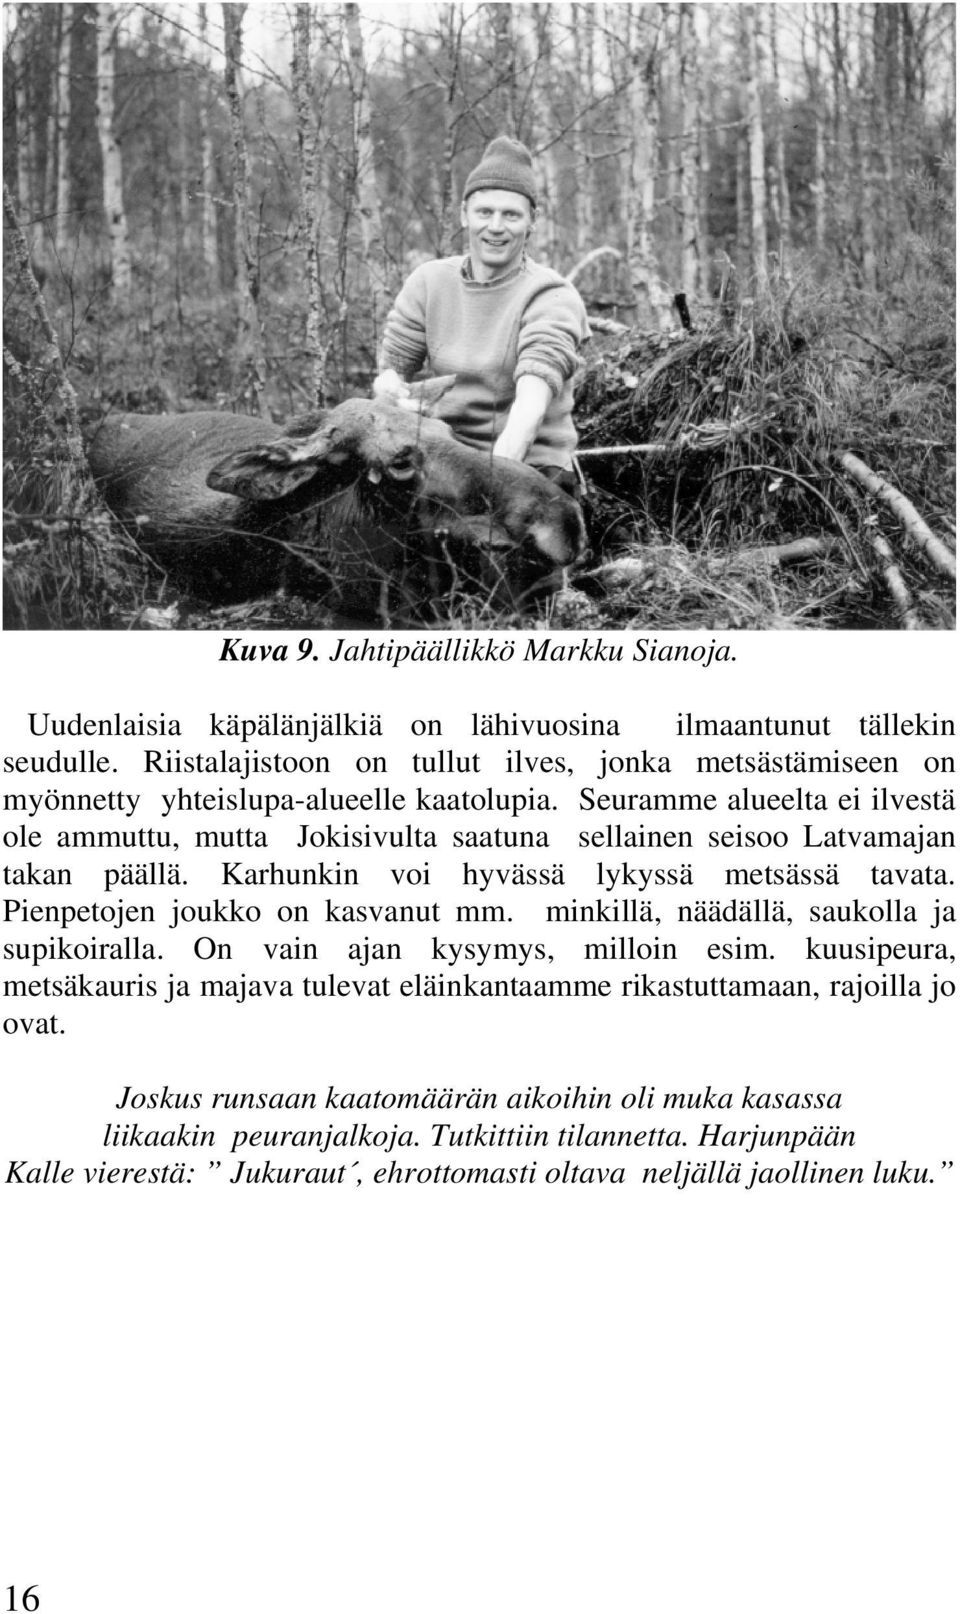 Seuramme alueelta ei ilvestä ole ammuttu, mutta Jokisivulta saatuna sellainen seisoo Latvamajan takan päällä. Karhunkin voi hyvässä lykyssä metsässä tavata.